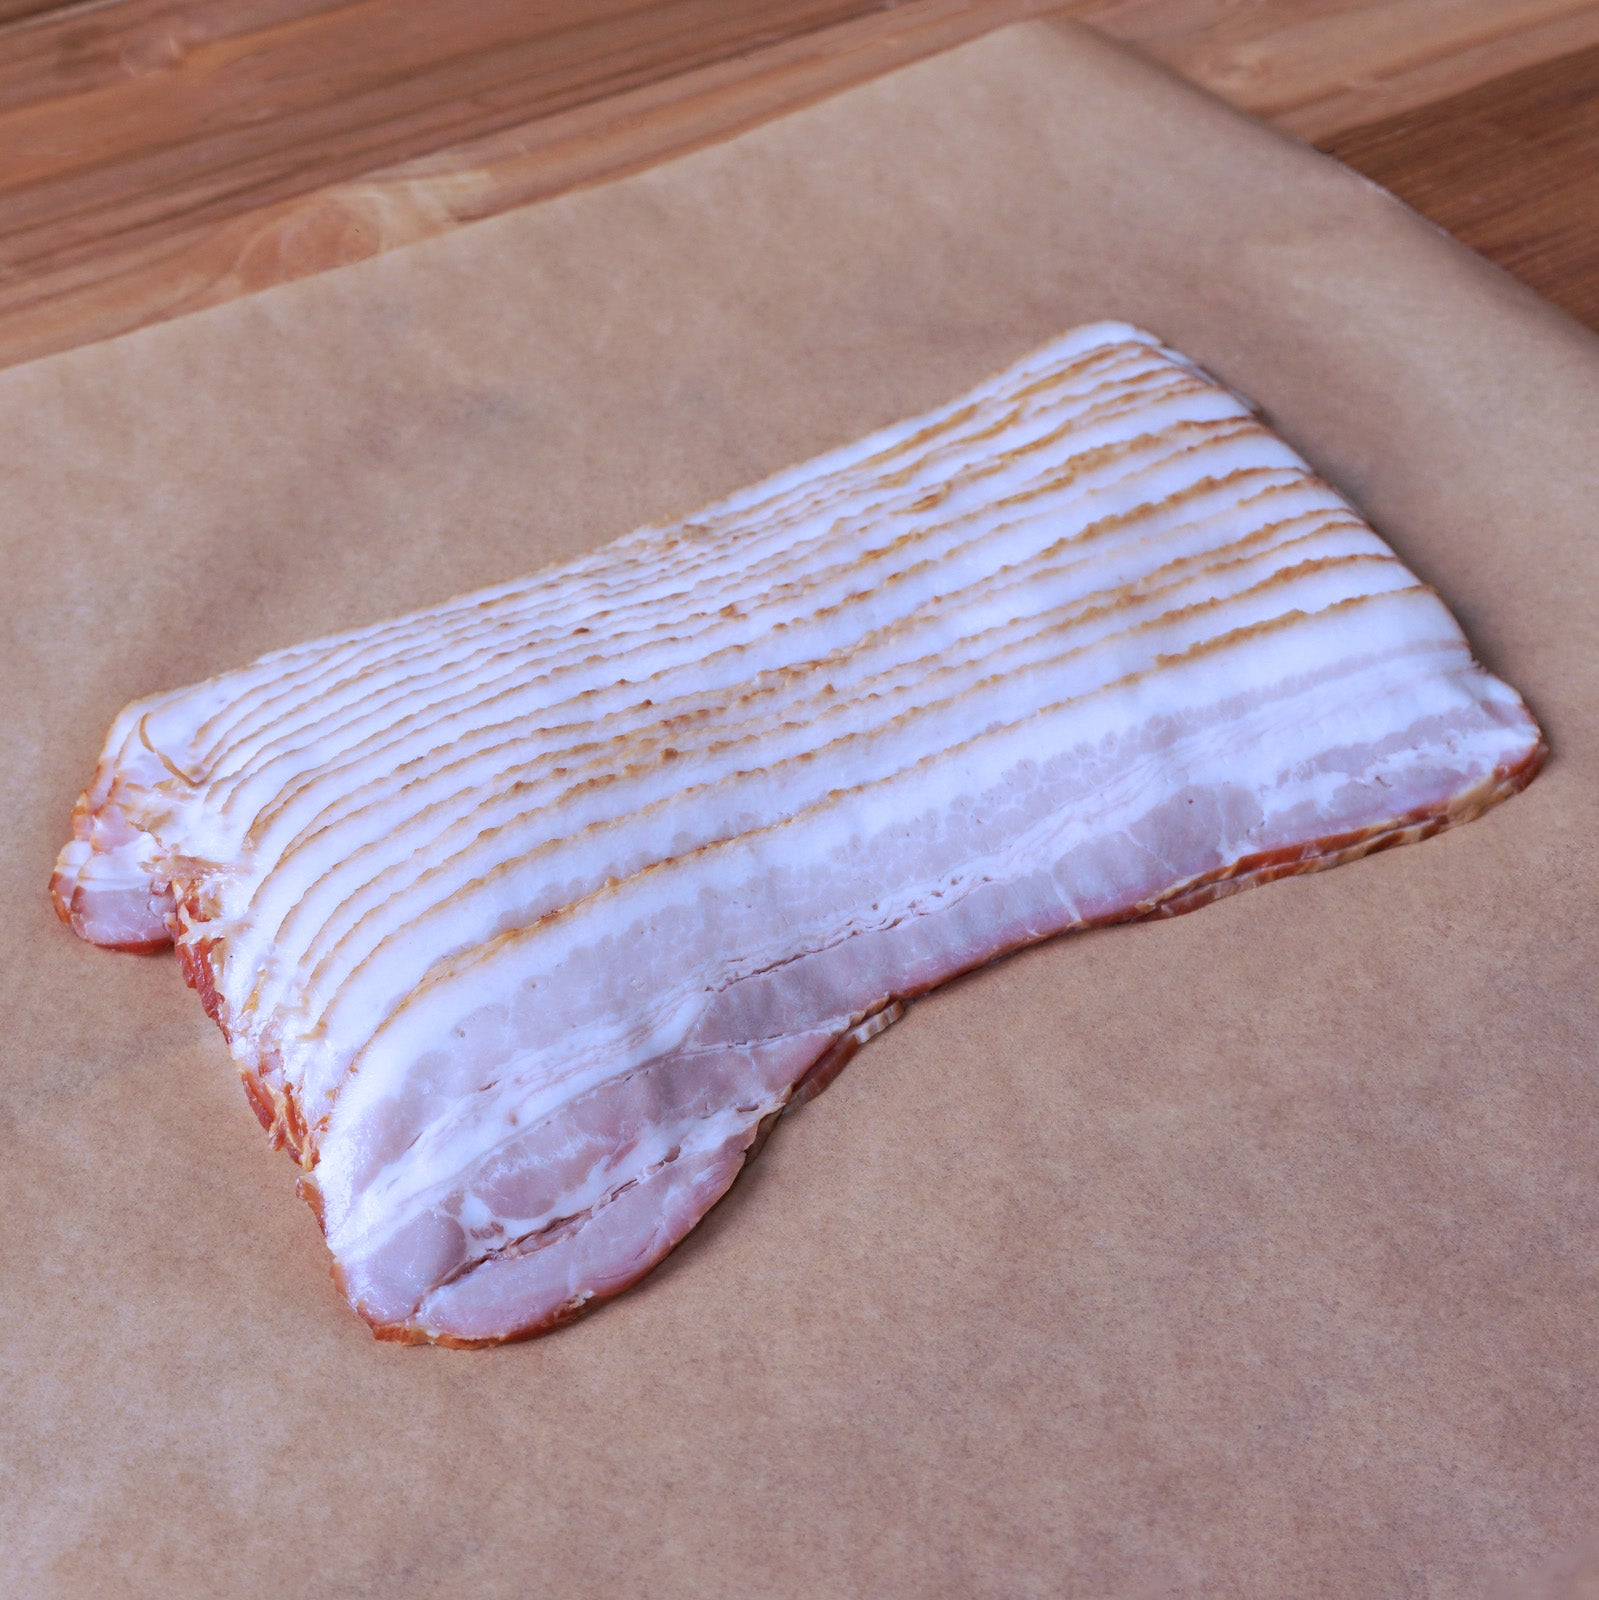 無添加 香辛料不使用 砂糖不使用 放牧豚 豚バラ スモーク アメリカンスタイル ベーコン スライス (200g) ホライズンファームズ